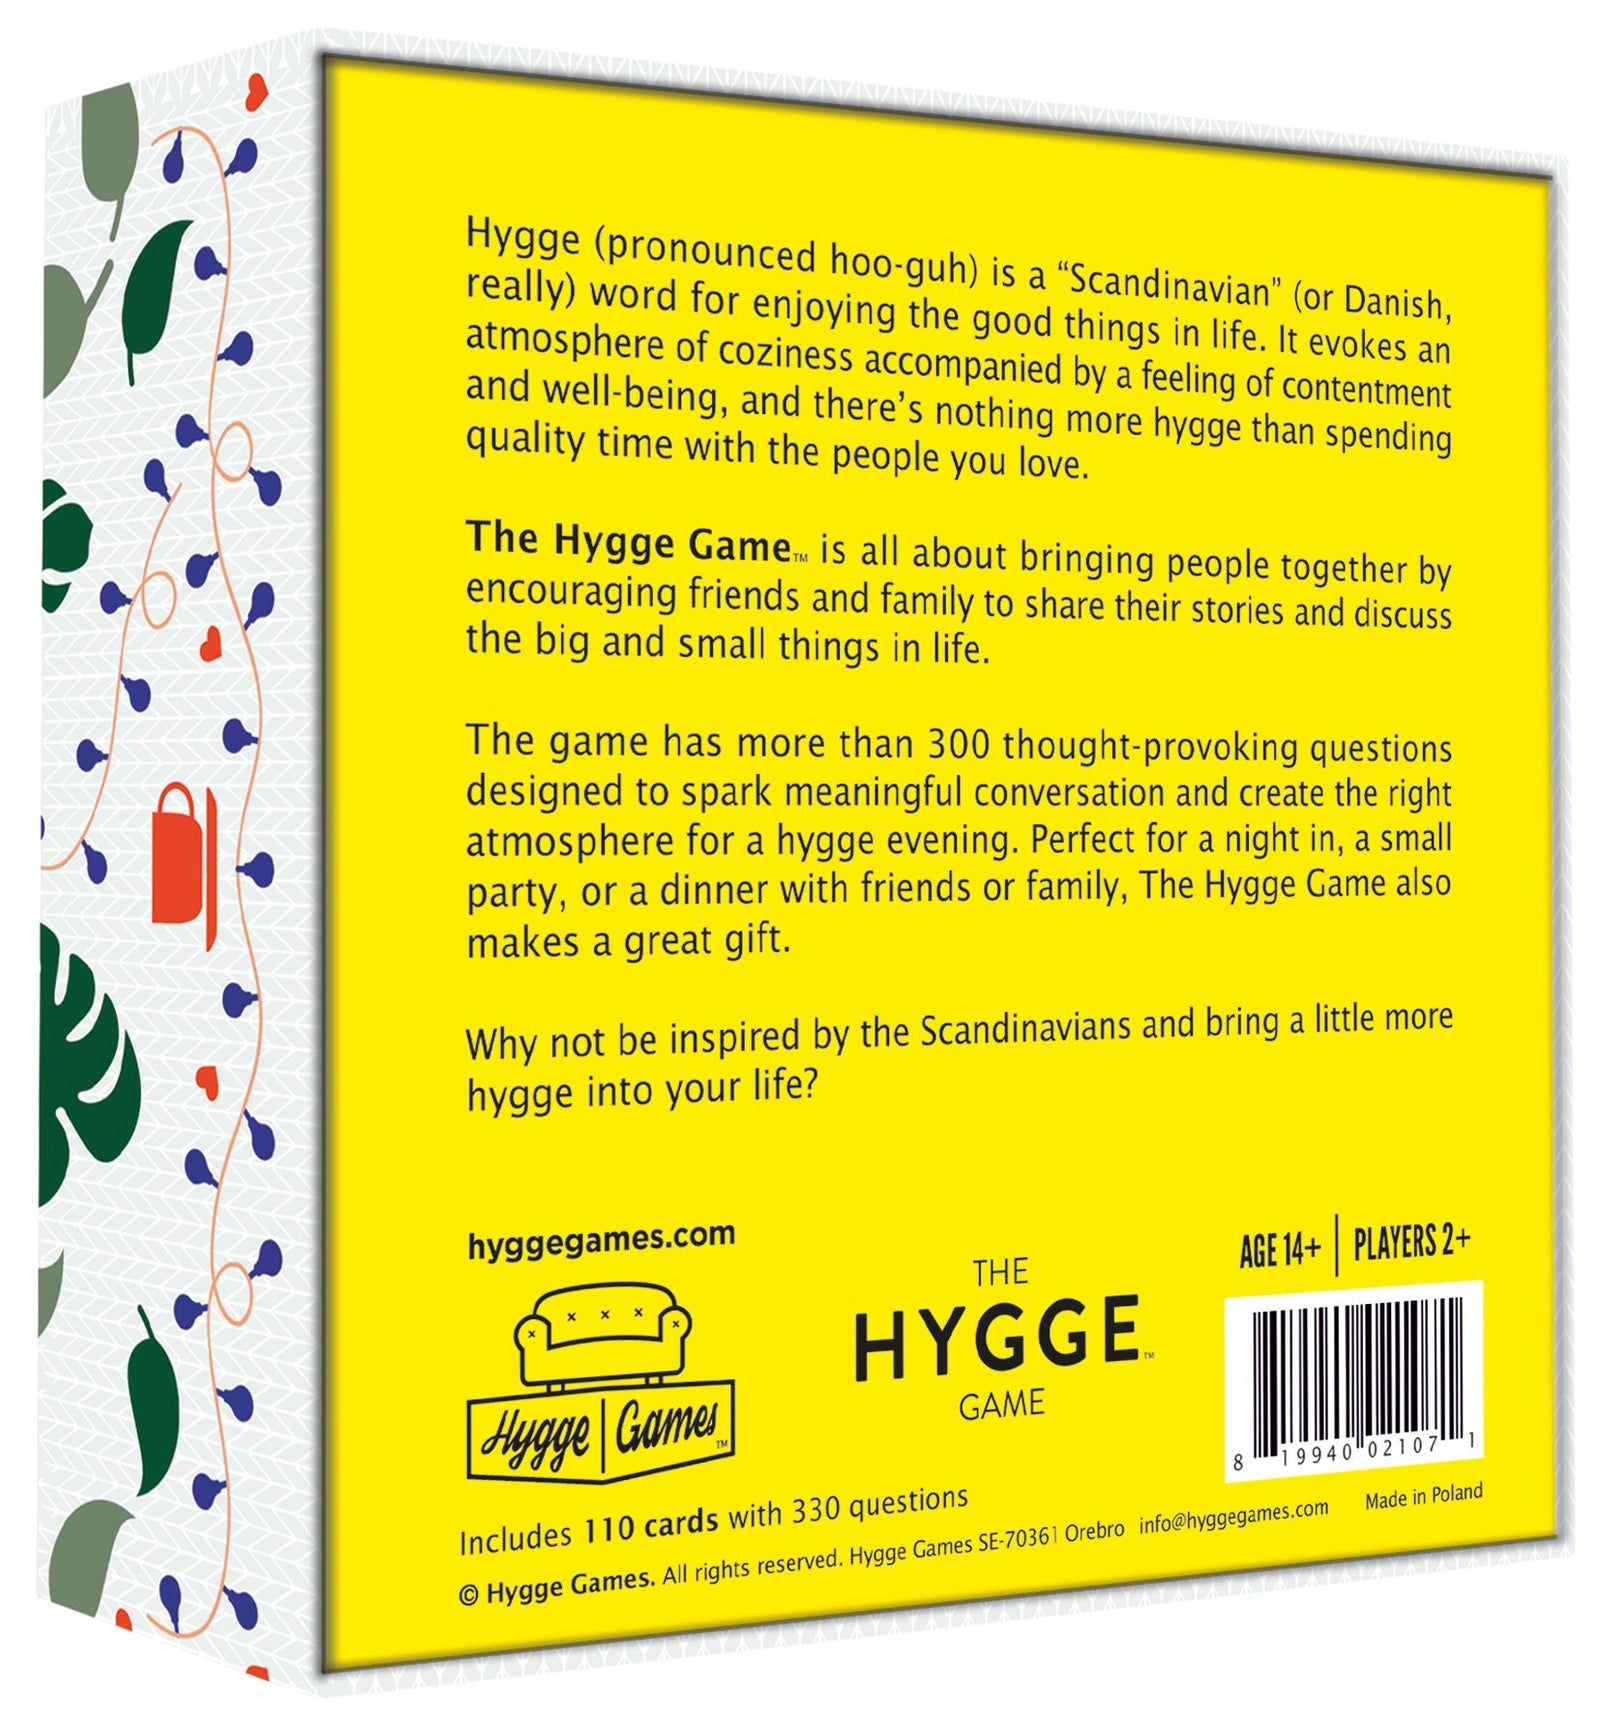 The Hygge Game - Cozy Conversation In Pleasant Company Multicolored, White